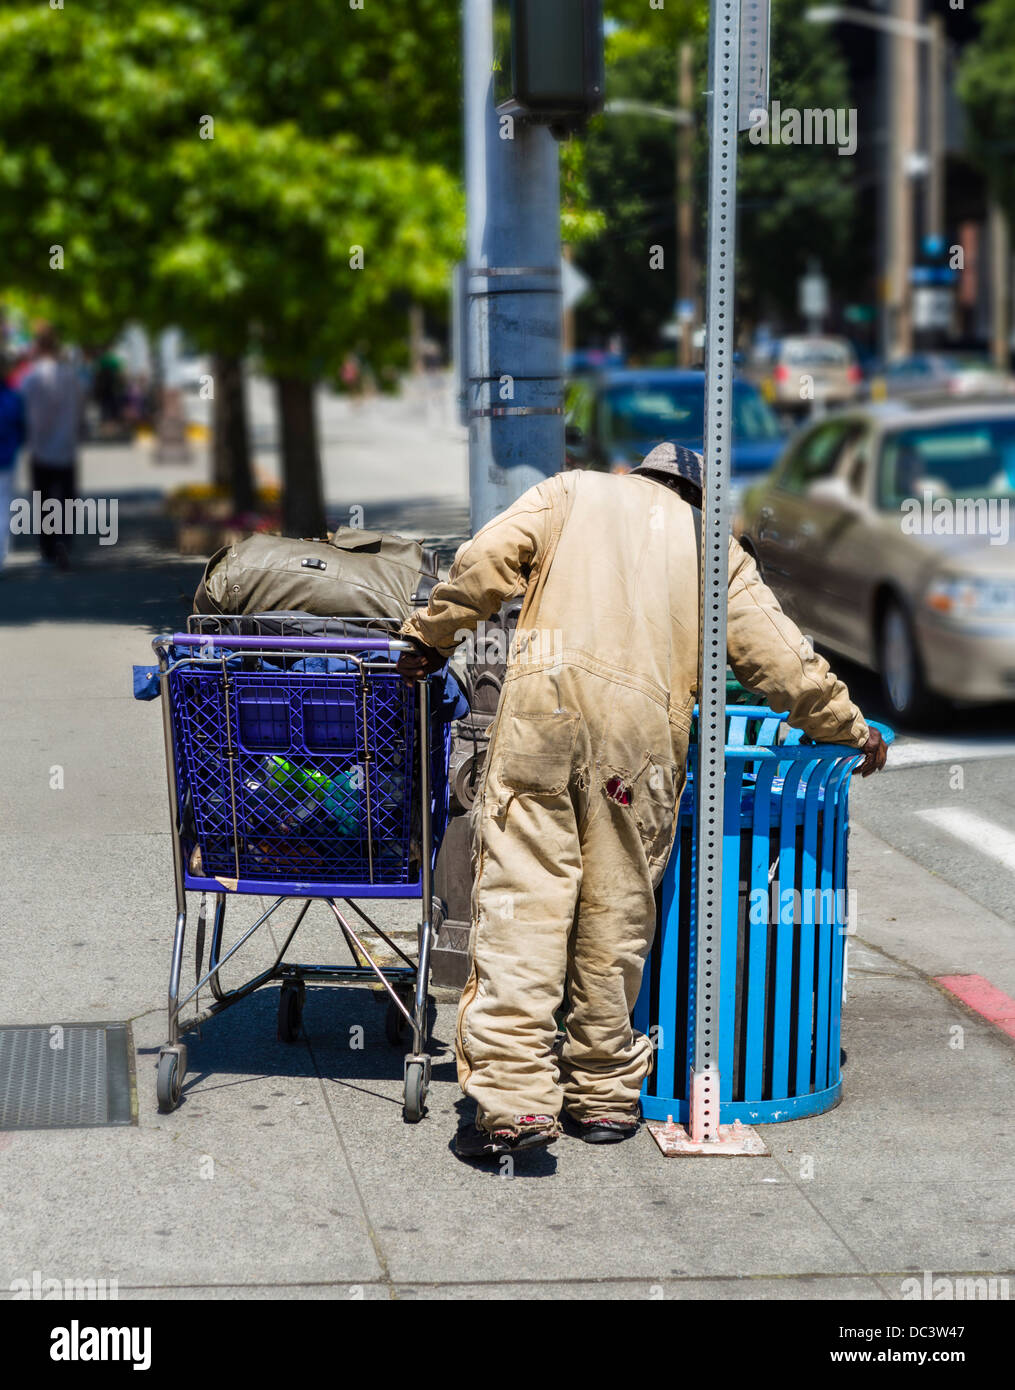 Obdachloser mit einem Warenkorb in einem Papierkorb aufräumen können, Seattle, Washington, USA Stockfoto